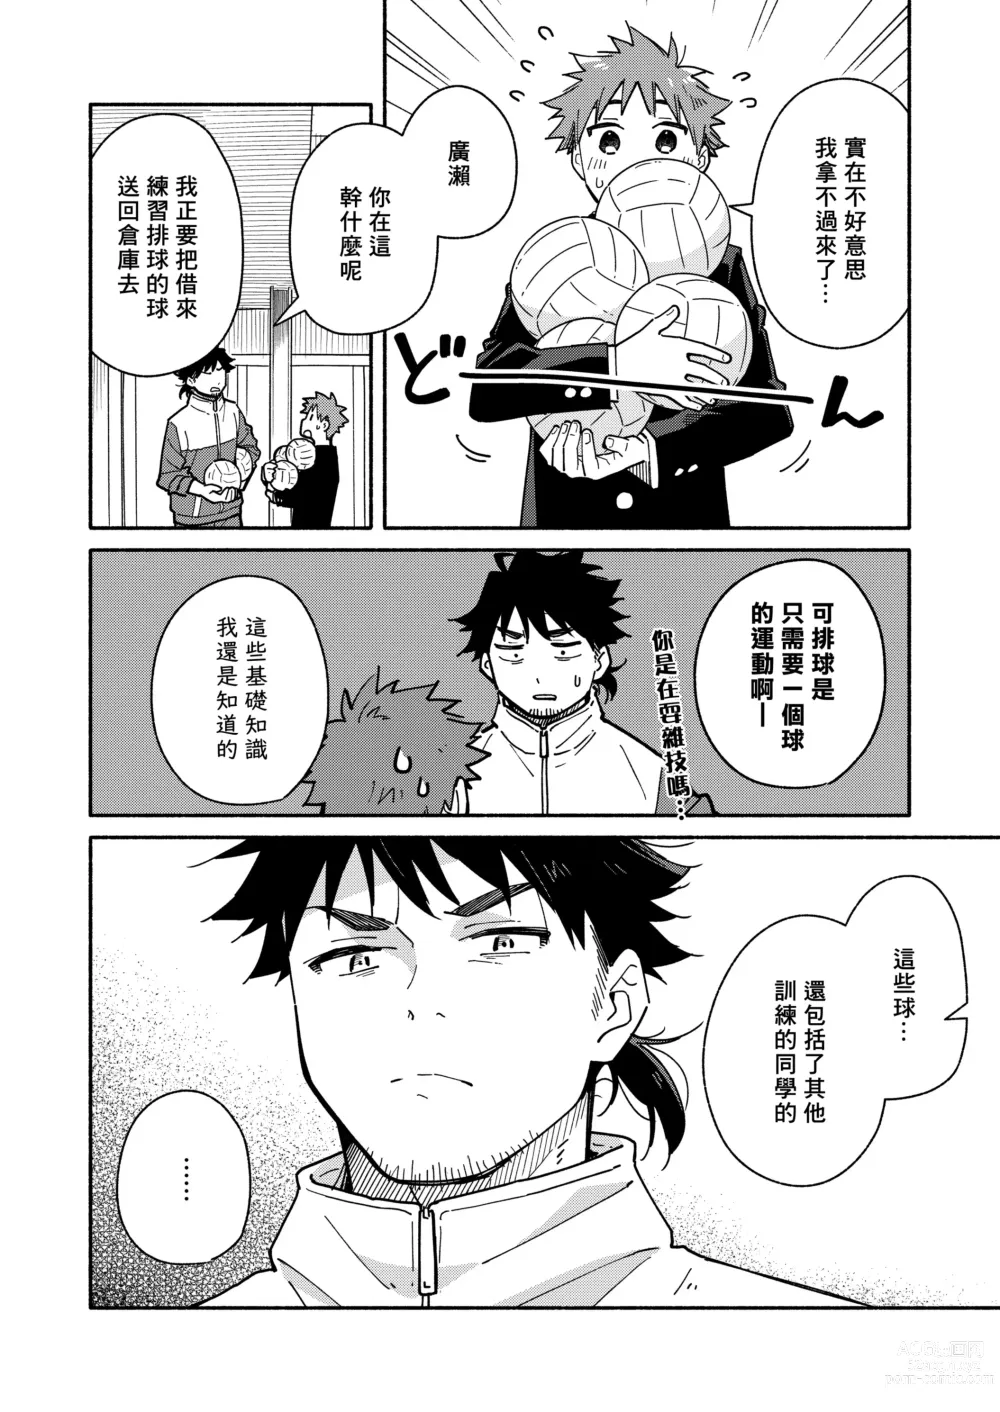 Page 11 of doujinshi 鬼畜老師的加害授課